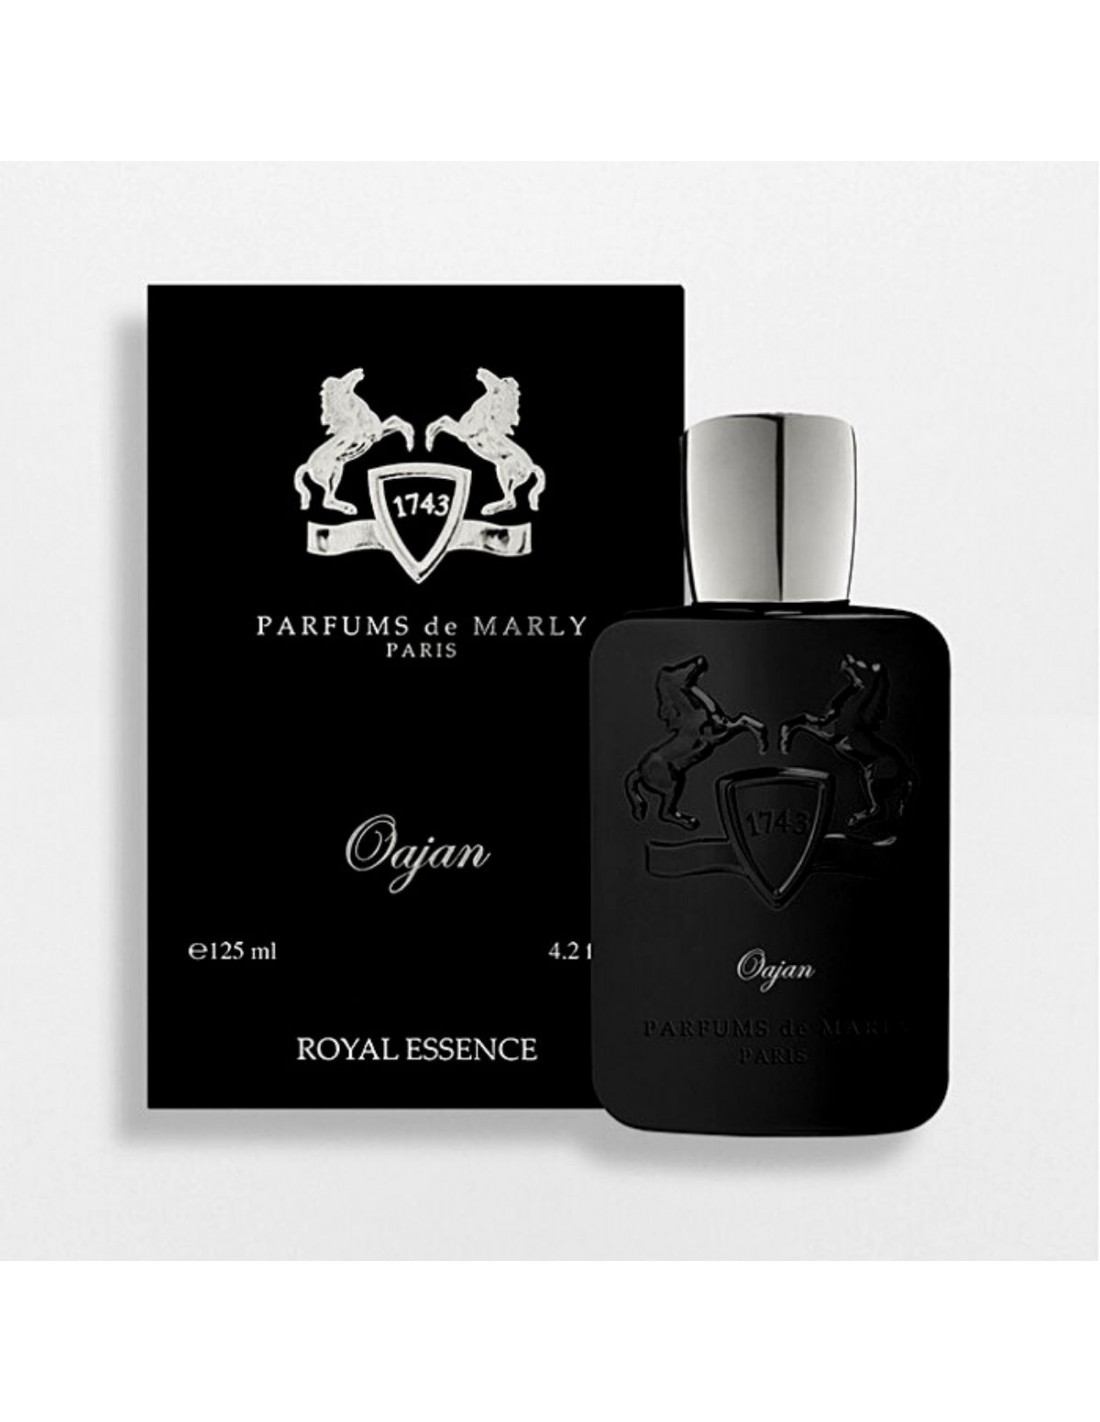 Валайя парфюм. Parfums de Marly мужская коллекция. Parfums de Marly мужская коллекция красивые фото.